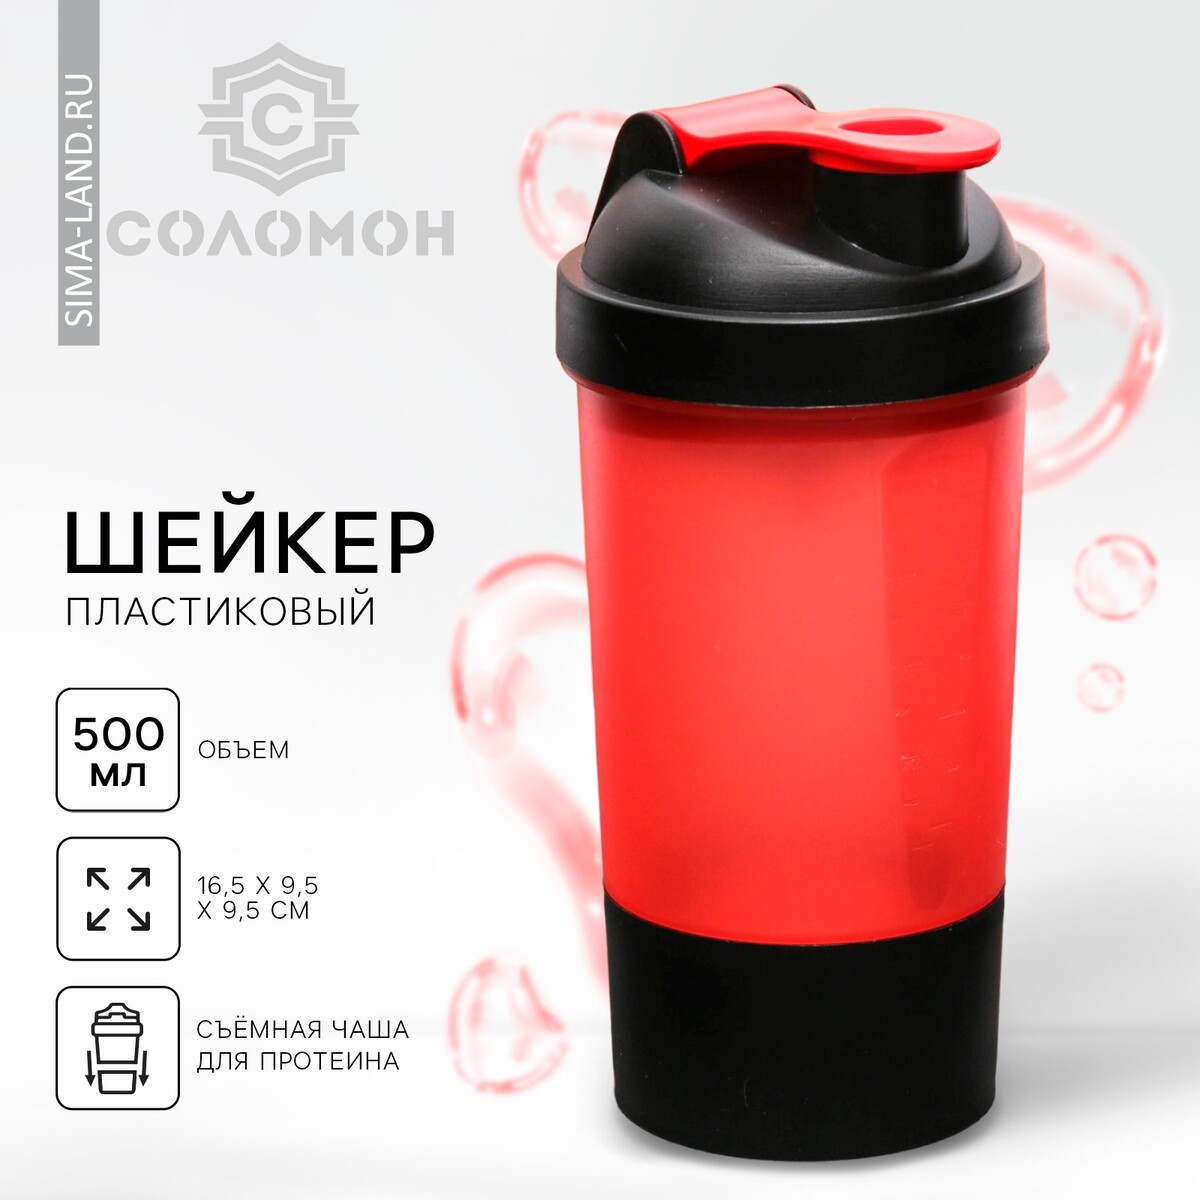 Шейкер спортивный с чашей под протеин, красно-черный, 500 мл шейкер спортивный с чашей под протеин красно 500 мл